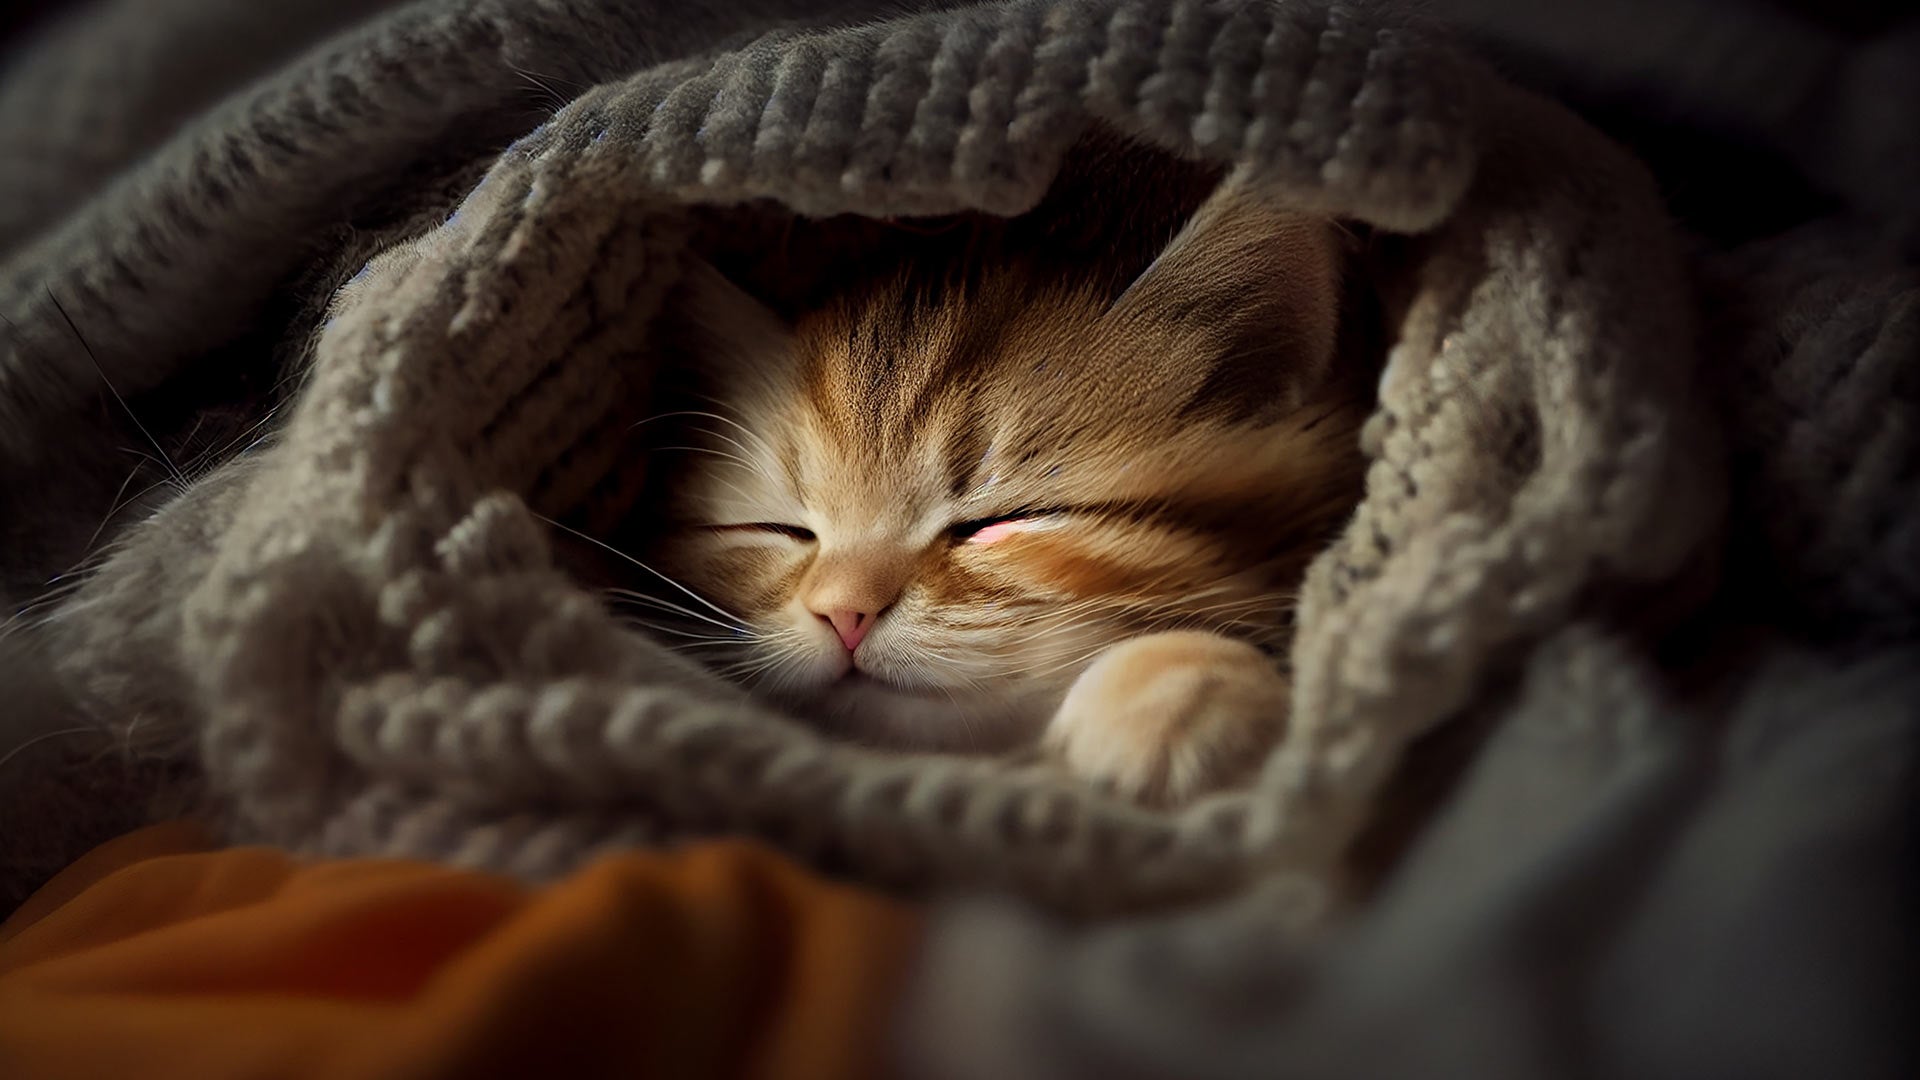 cute-kitten-with-striped-fur-sleeping-blanket